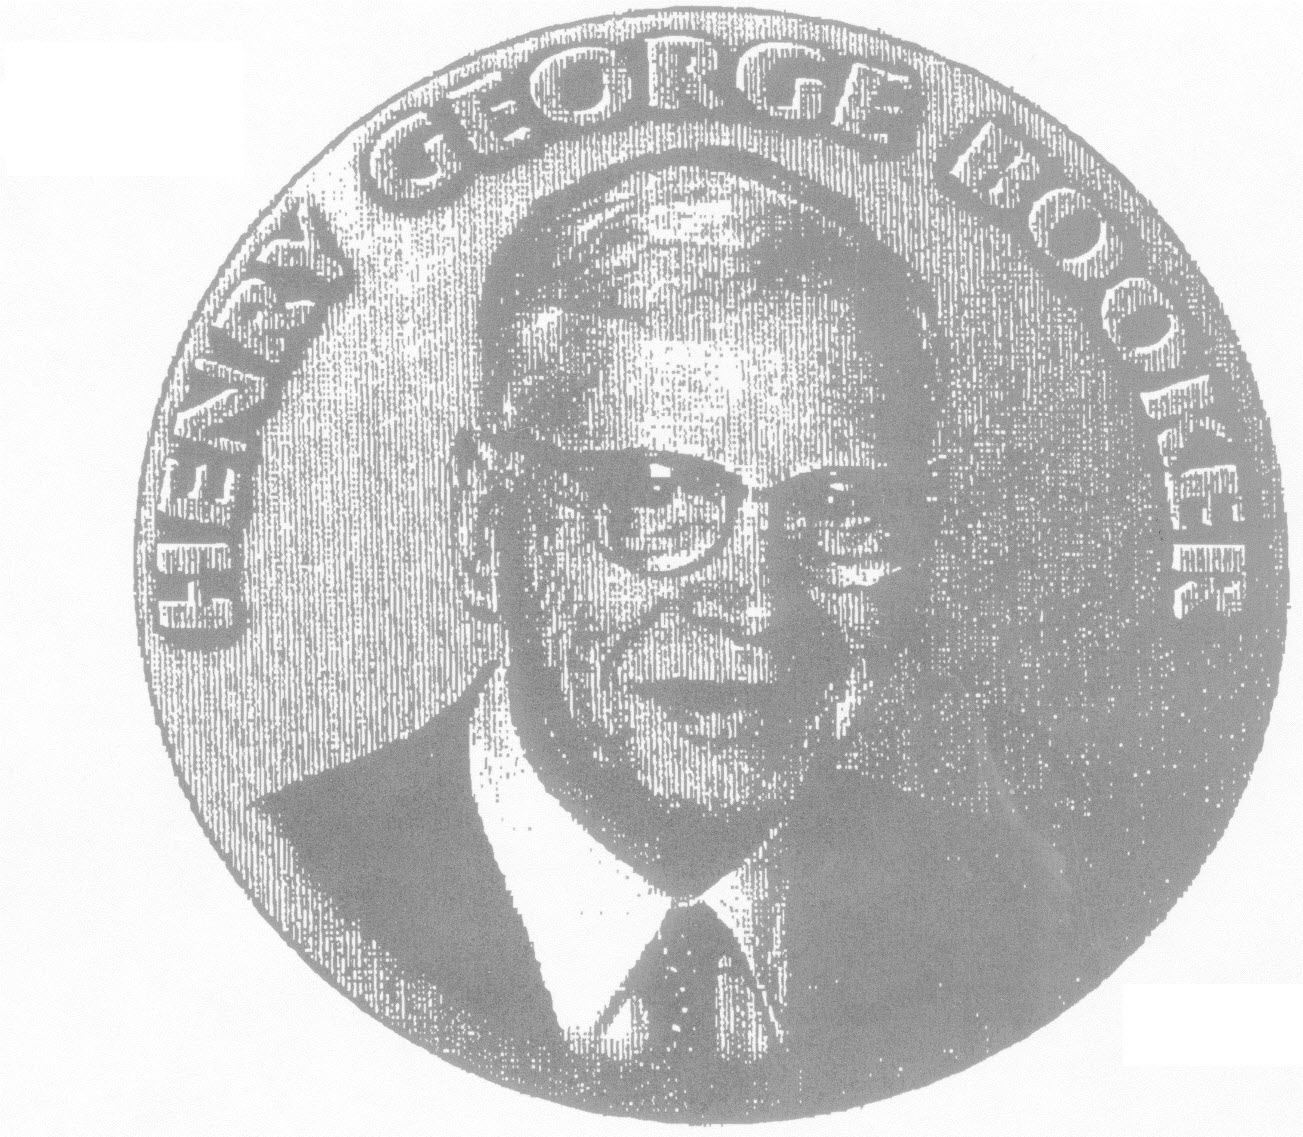 Booker Medal